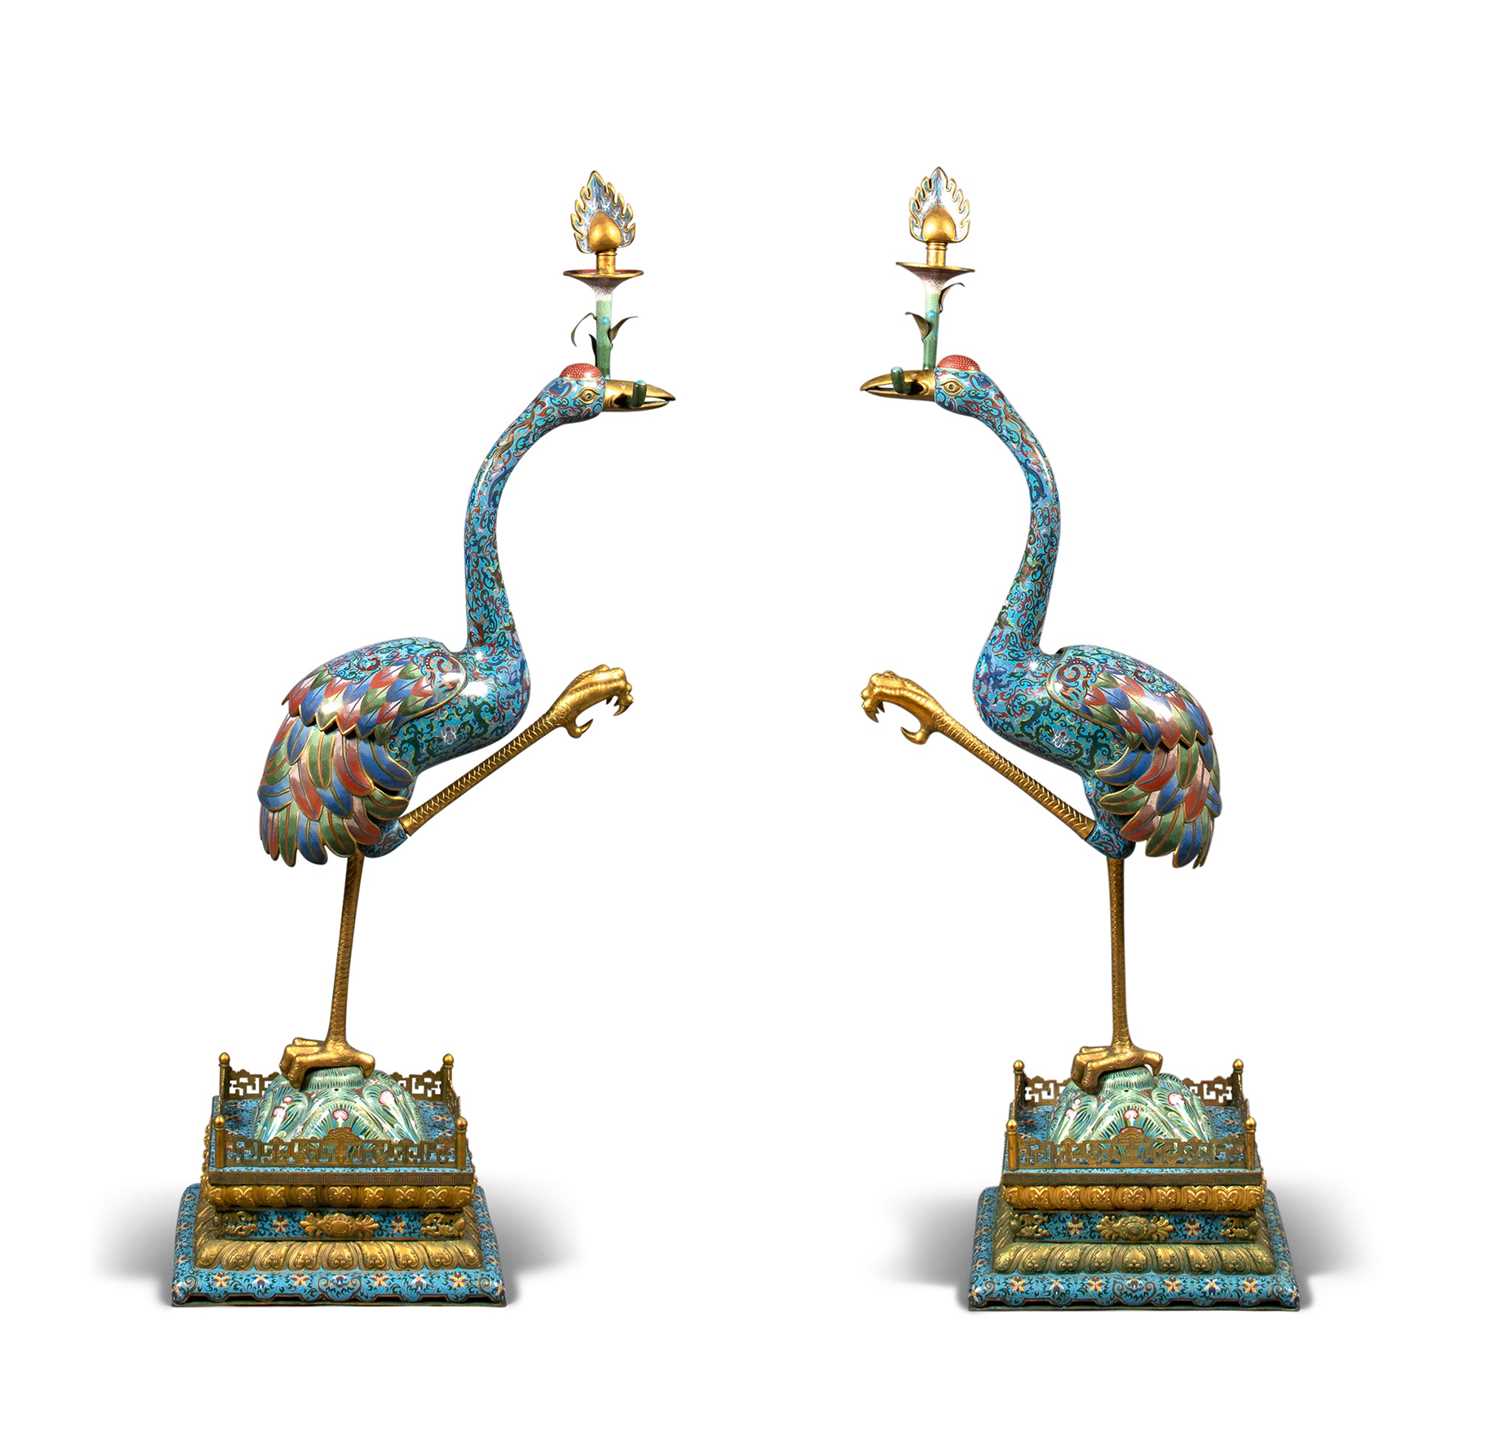 Lot 53 - A Large Pair of Chinese Cloisonné Enamel Cranes